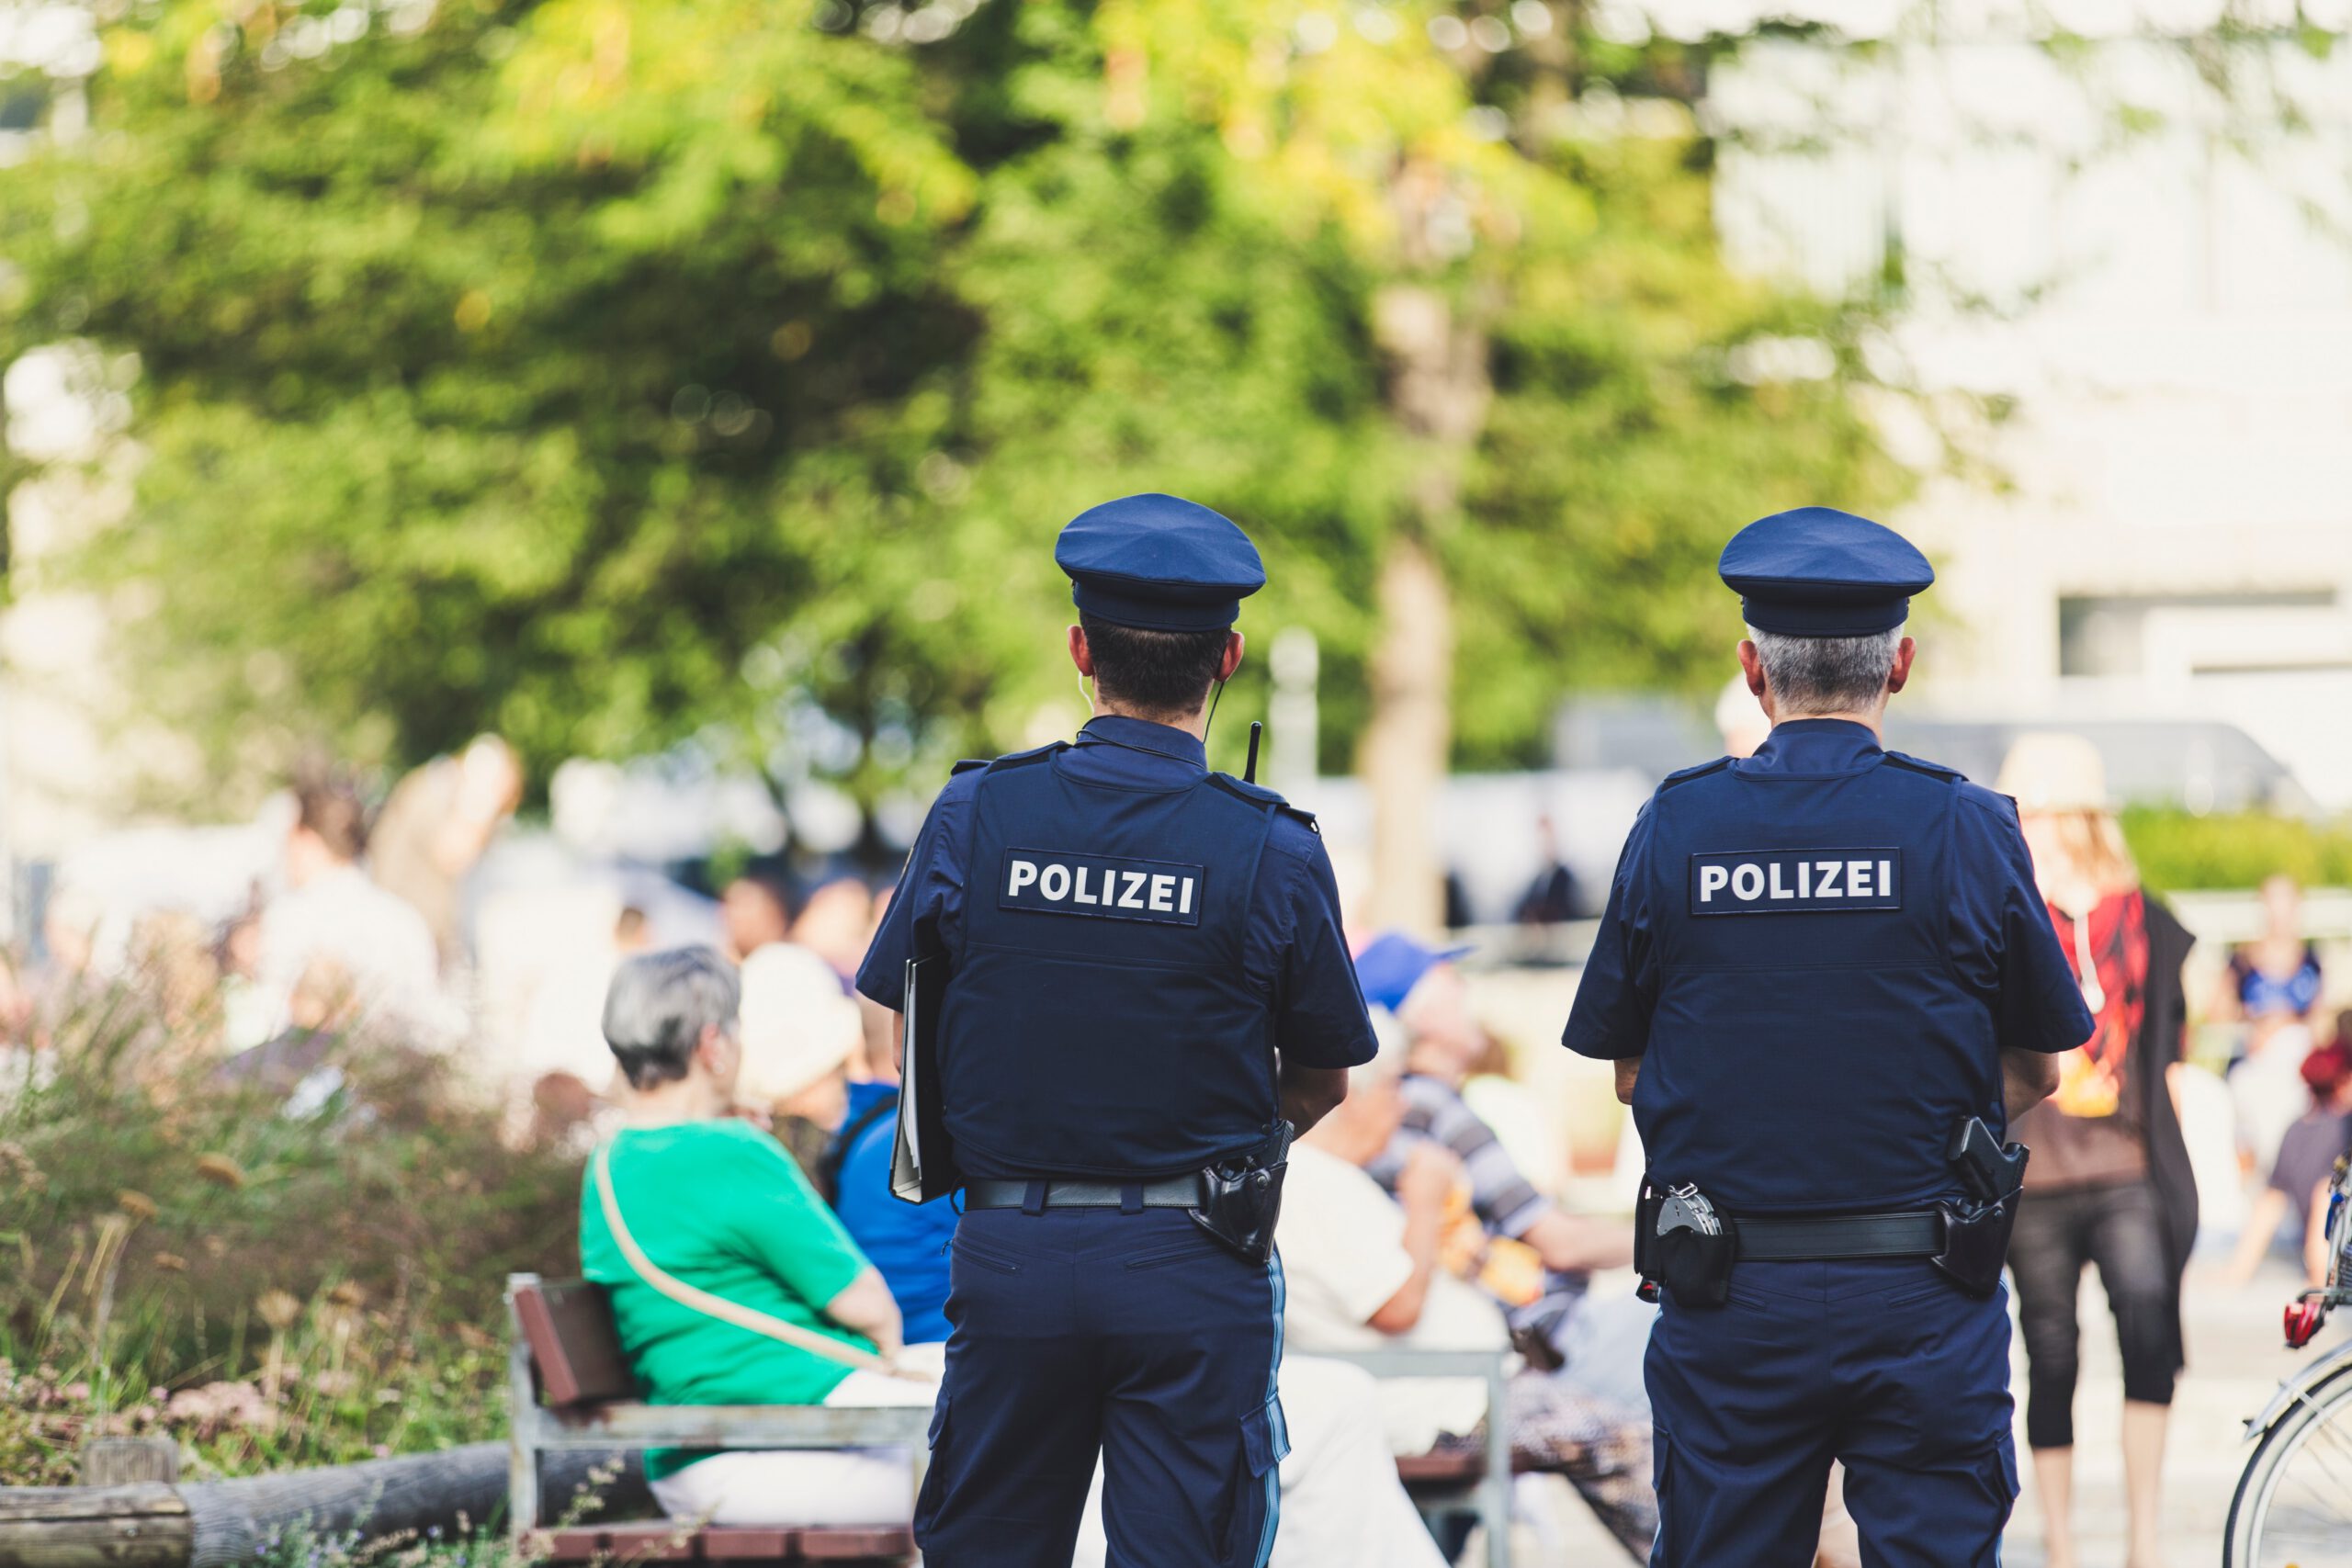 Aachener Polizisten funken “Sieg Heil” vor Synagoge